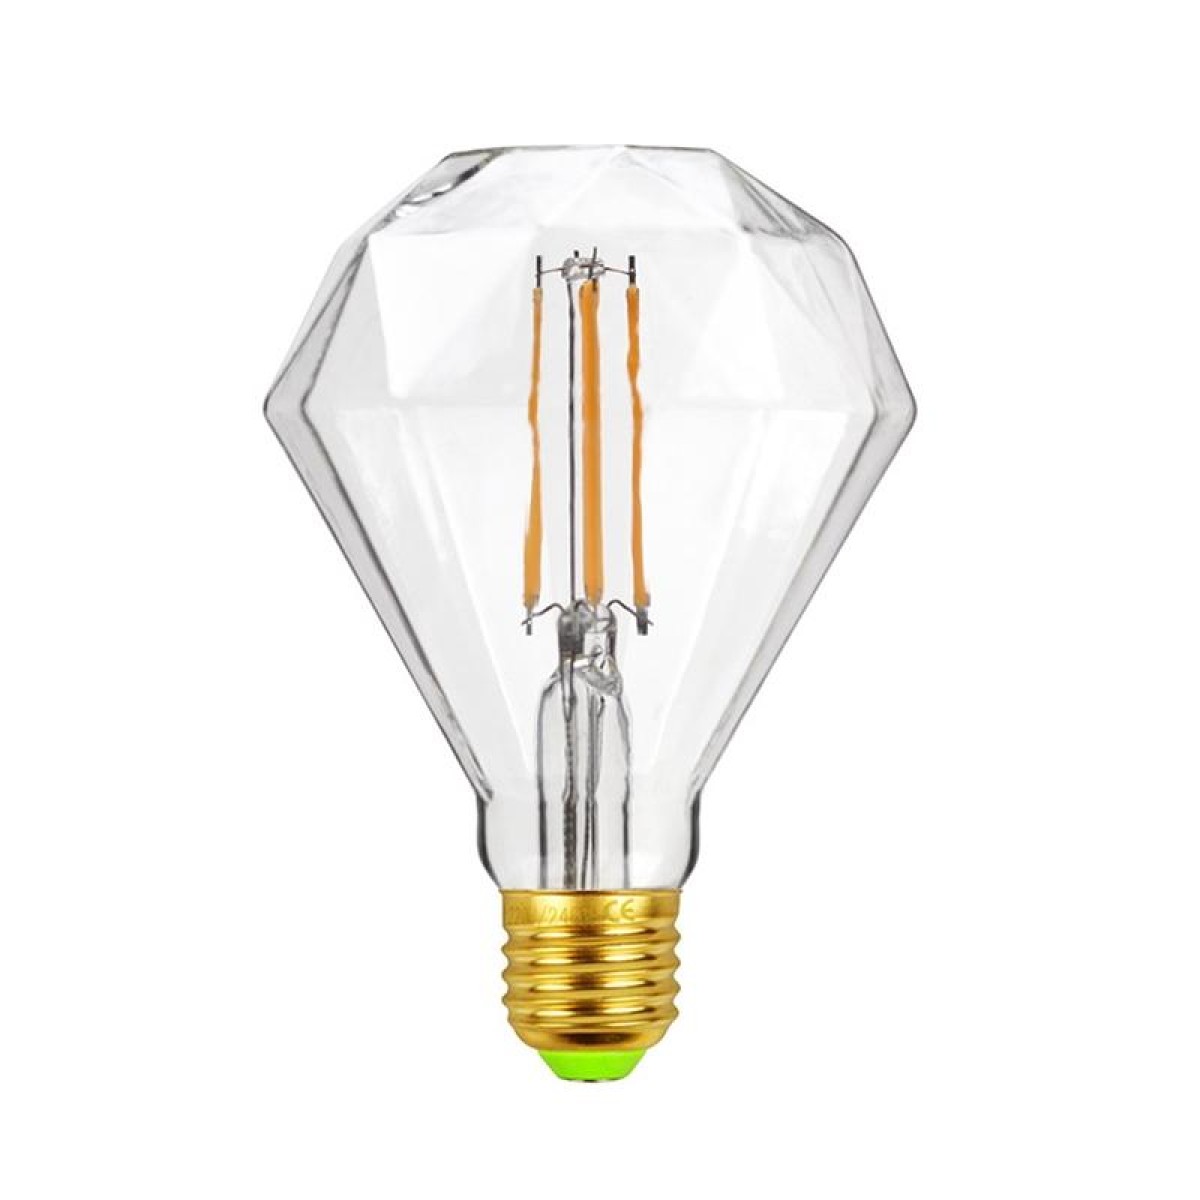 E27 Screw Port LED Vintage Light Shaped Decorative Illumination Bulb, Style: Flat Diamond Transparent(110V 4W 2700K)